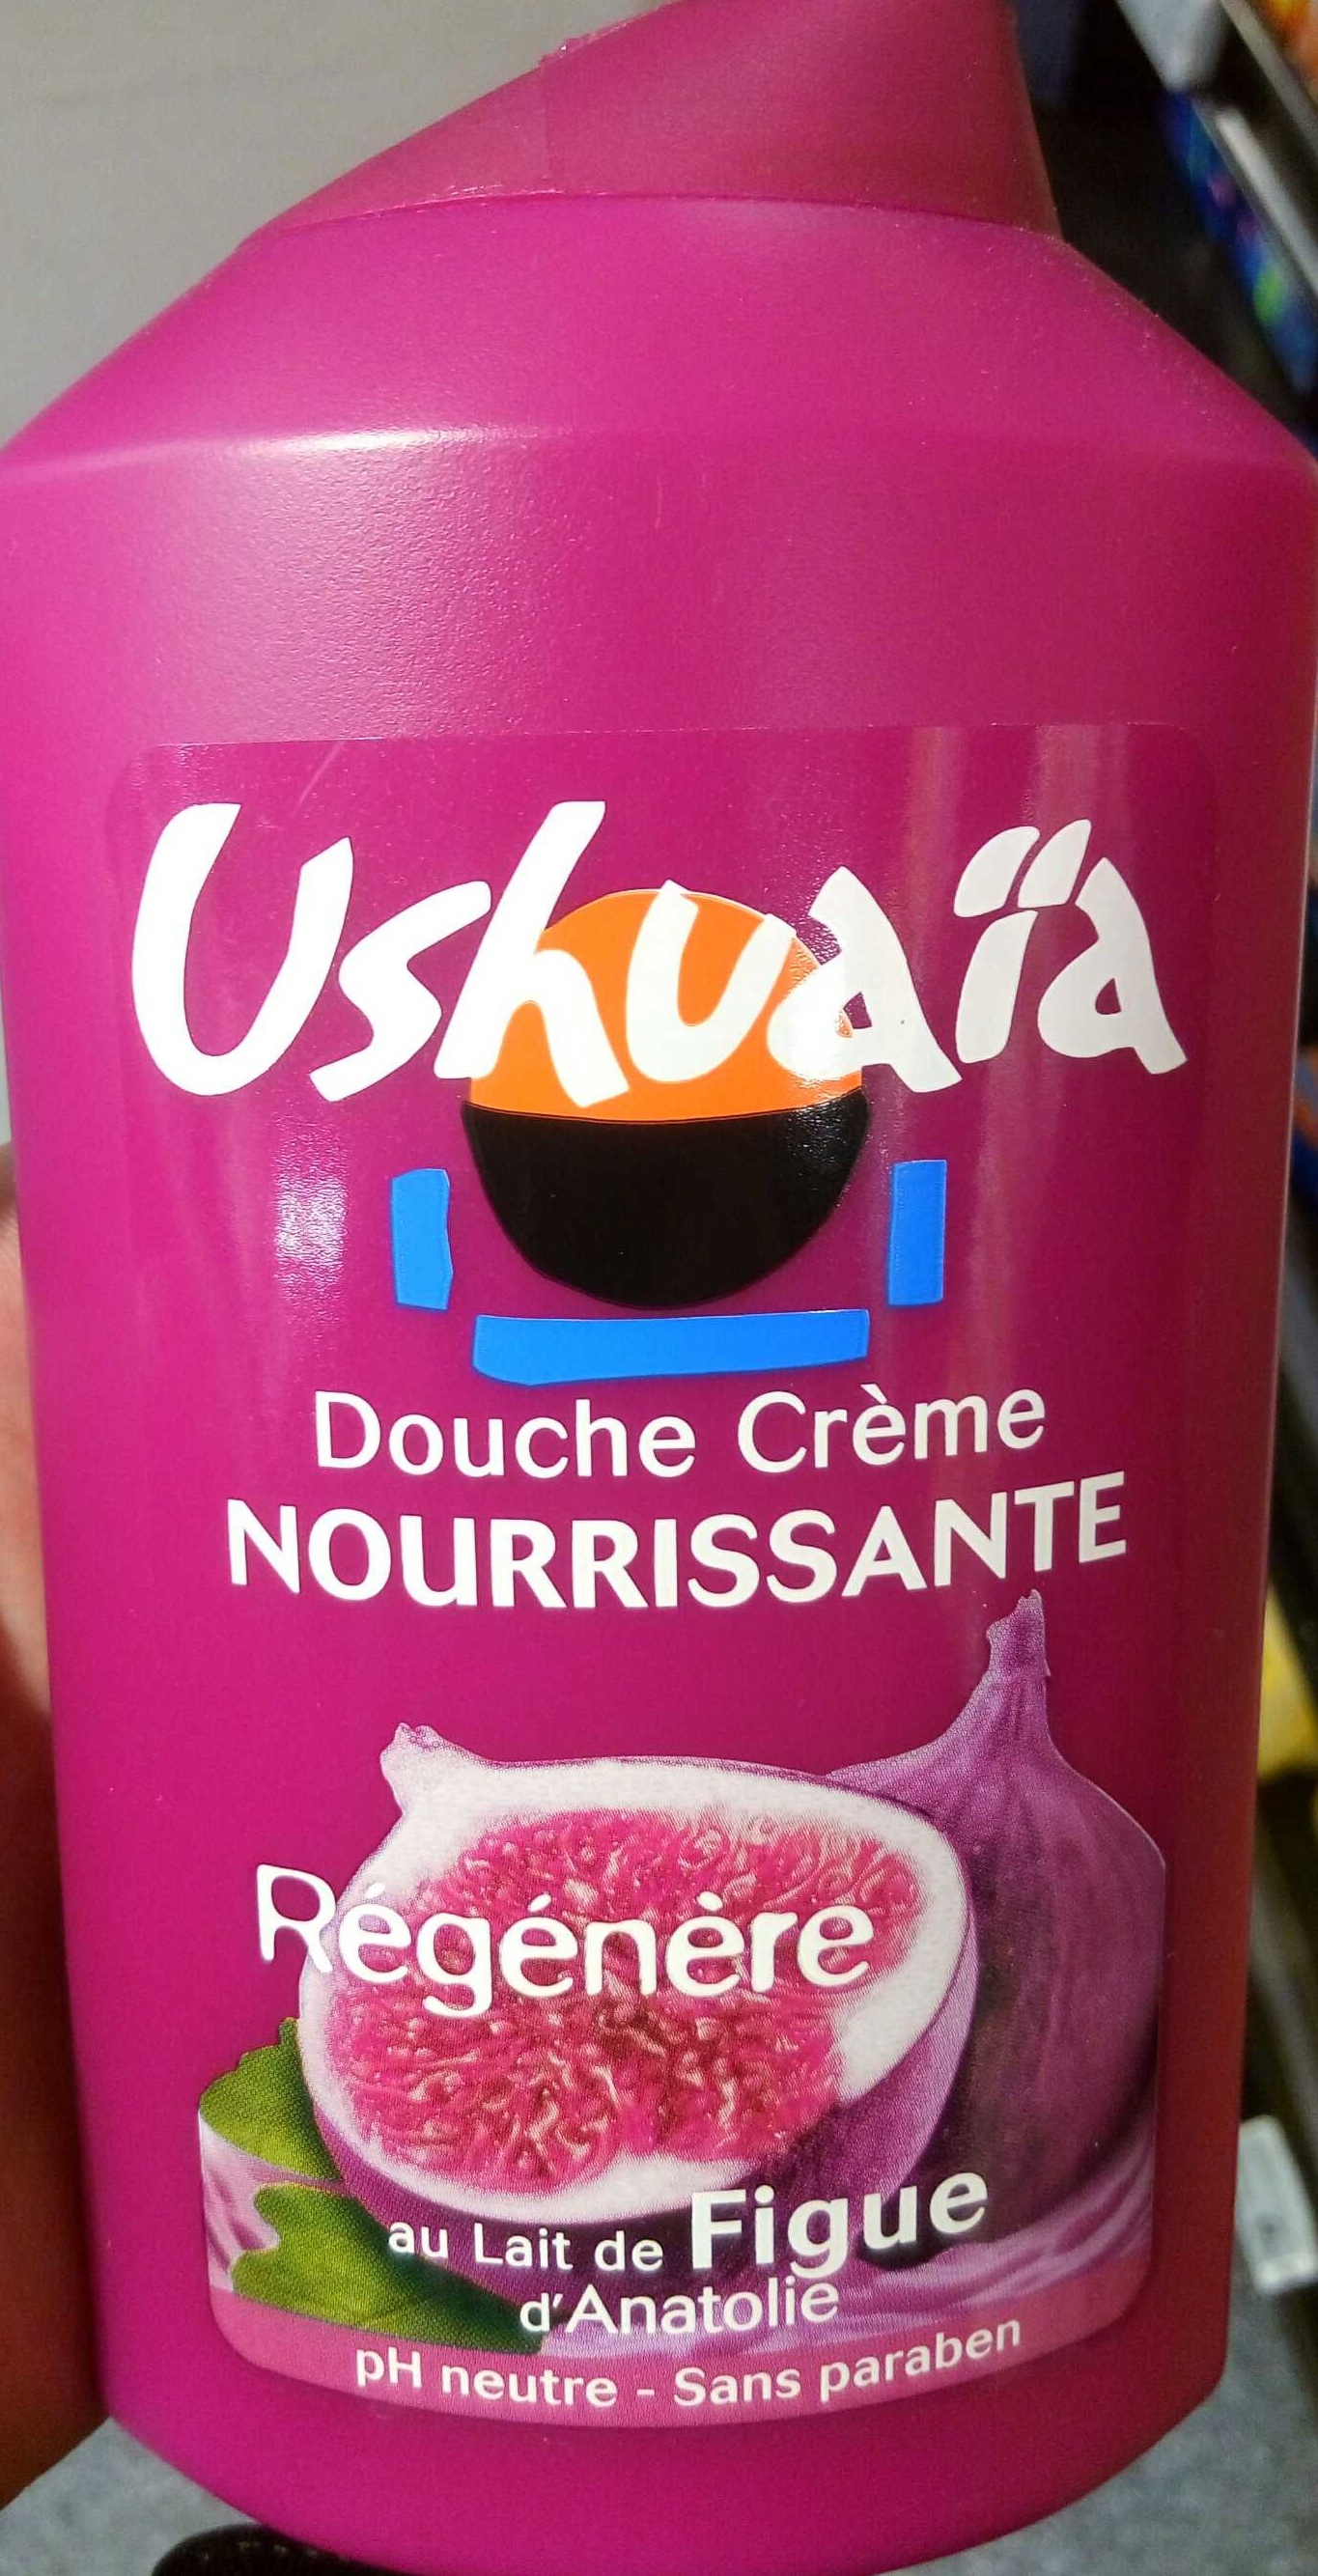 Douche Crème Nourissante au lait de Figue d'Anatolie - 製品 - fr